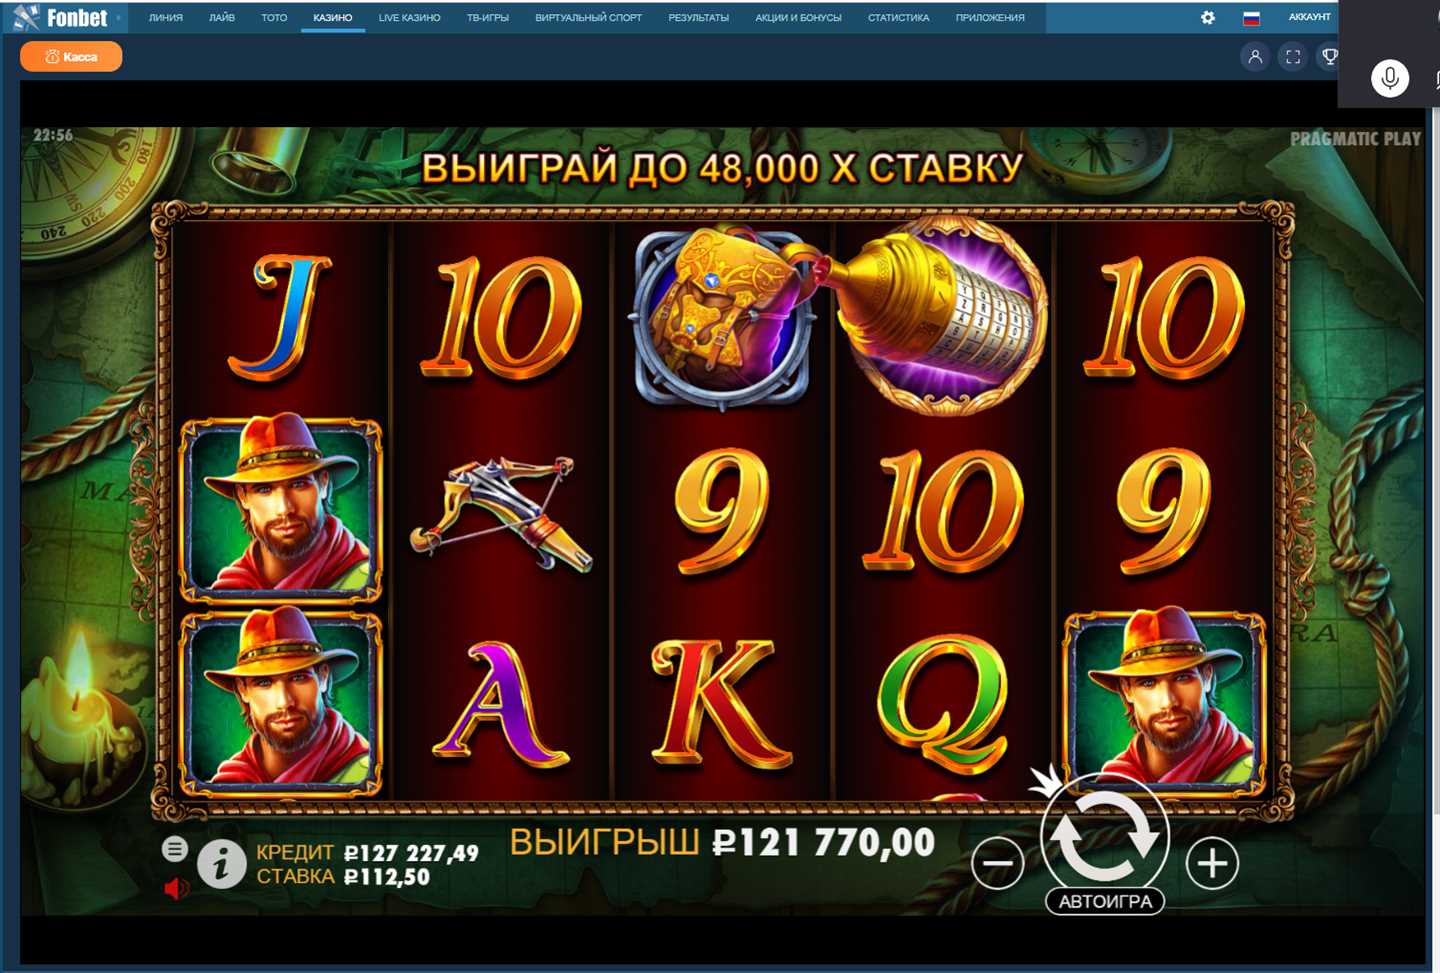 Как выиграть на слоте Vegas Cash Spins от Inspired Gaming | Статегия игры на слоте Вегас Цаш Спинс Инспиред Гаминг